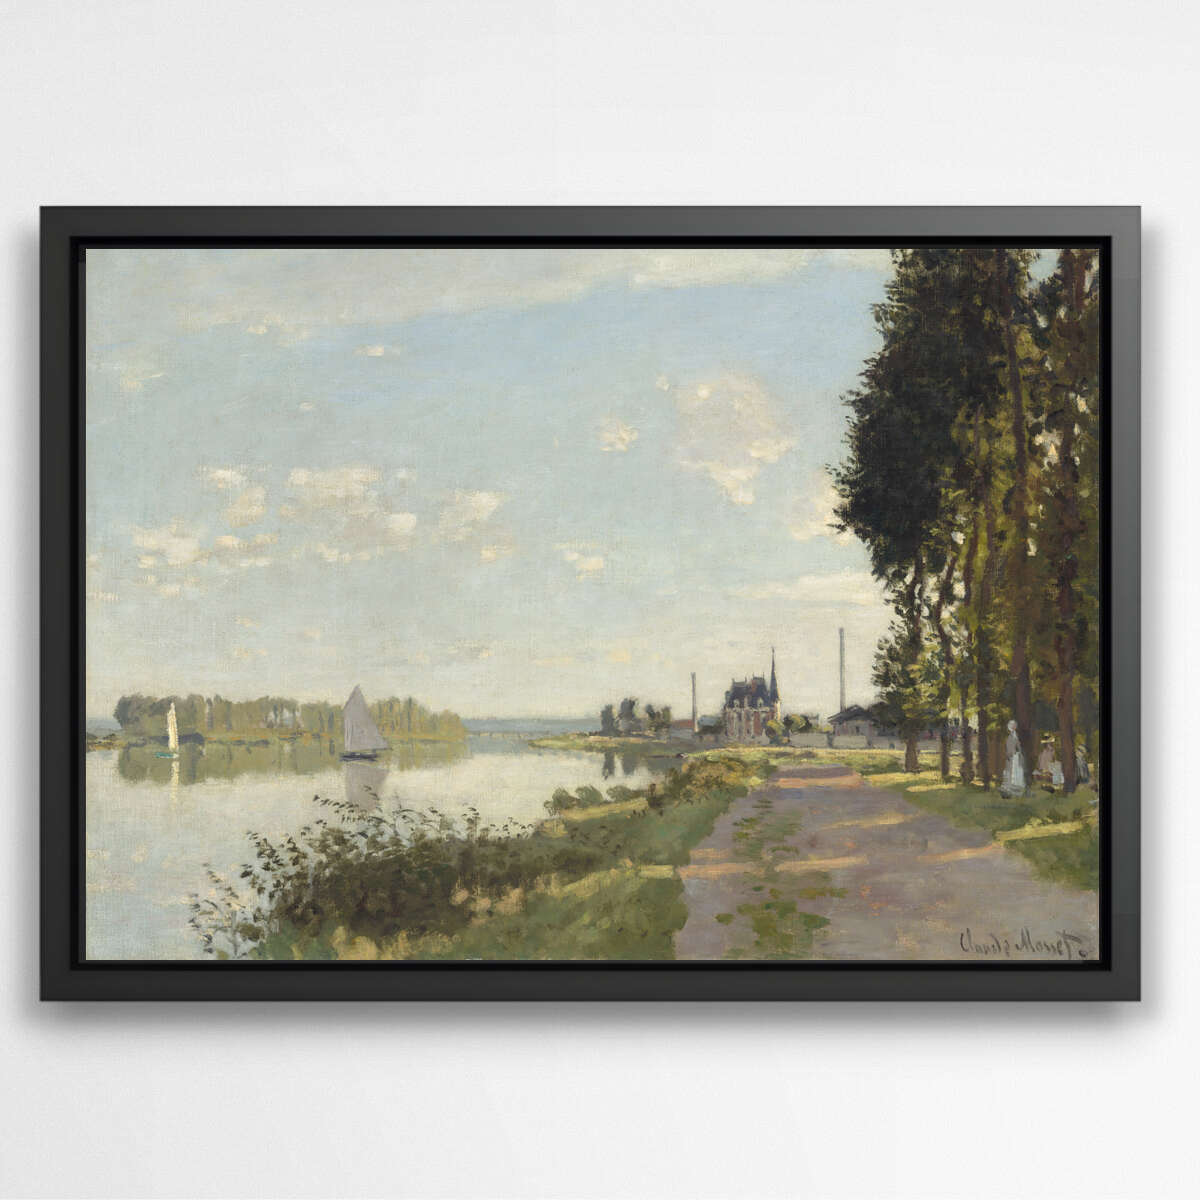 Argenteuil by Claude Monet | Claude Monet Wall Art Prints - The Canvas Hive